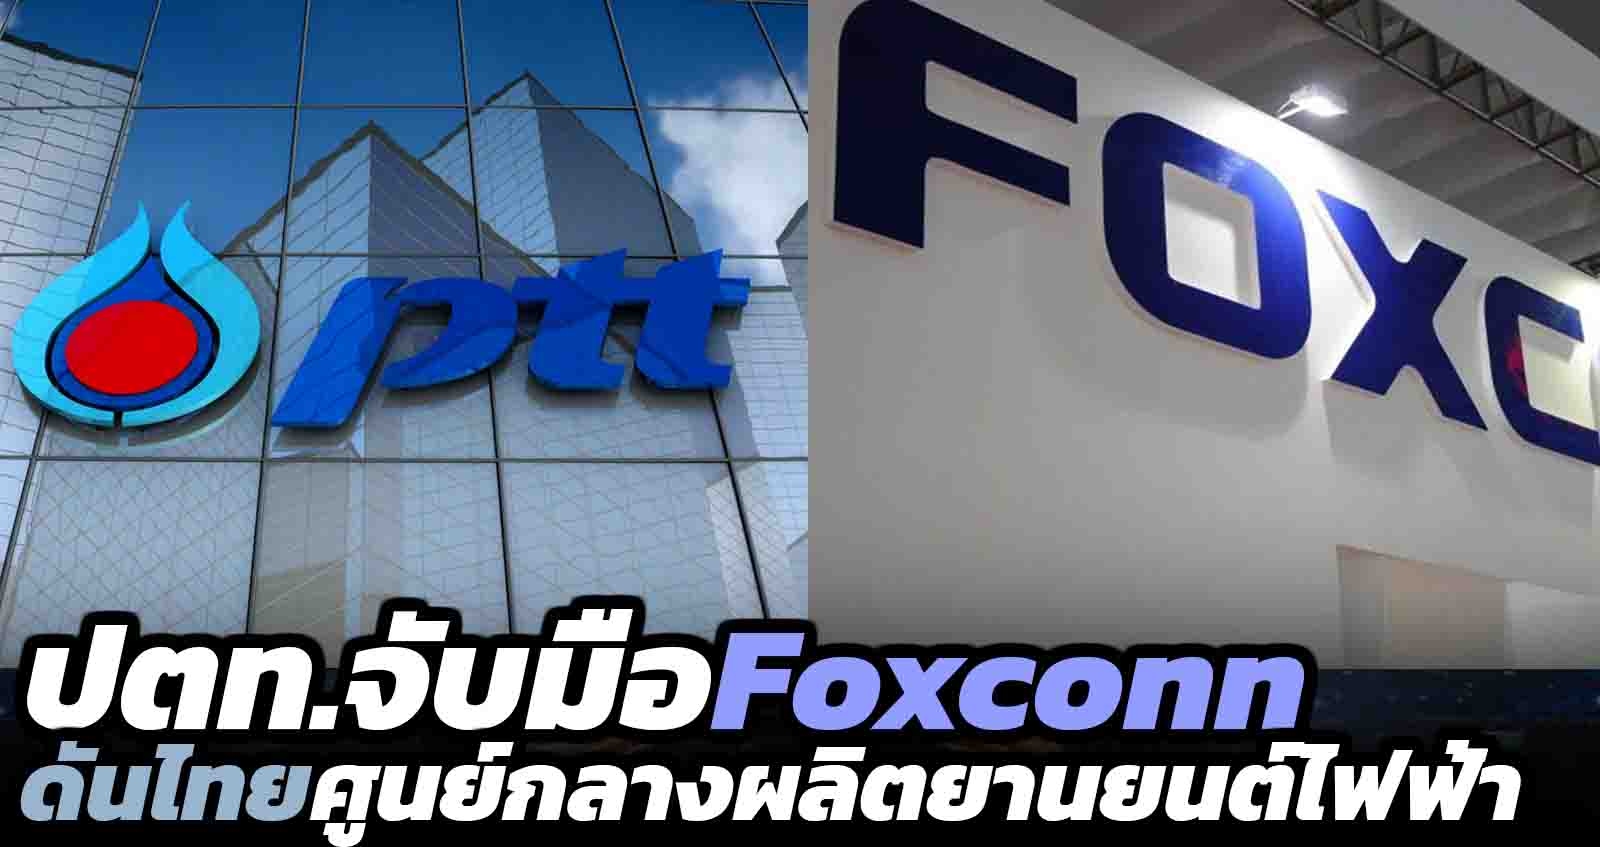 ปตท. จับมือ Foxconn ดันไทยศูนย์กลางผลิตยานยนต์ไฟฟ้า